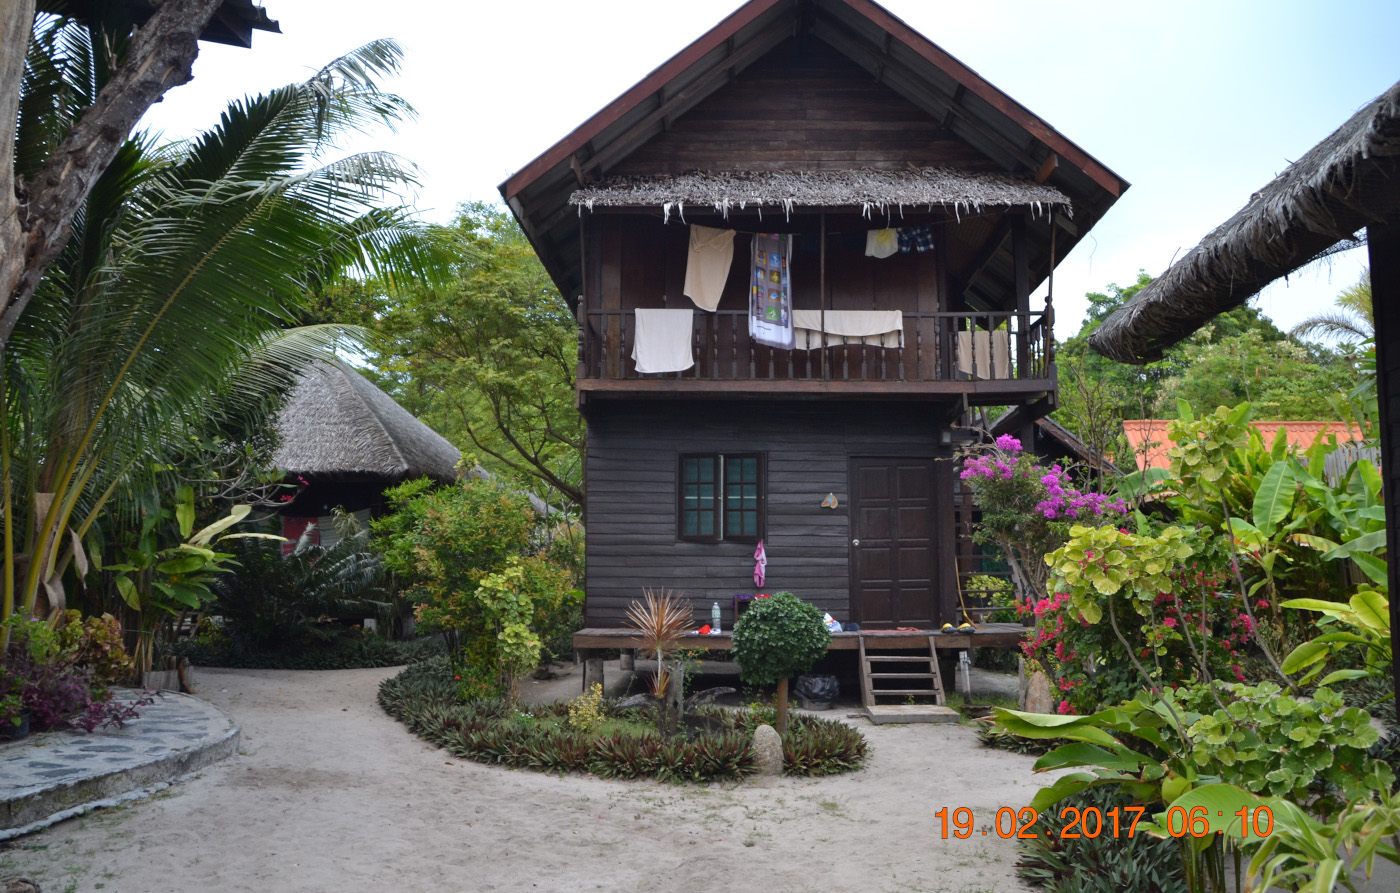 Фото 15. Домик в эко-отеле «Blue Tribes» на острове Ко Липе. Где найти жилье при отдыхе самостоятельно в Таиланде. 1/125, 5.6, 360, 55.